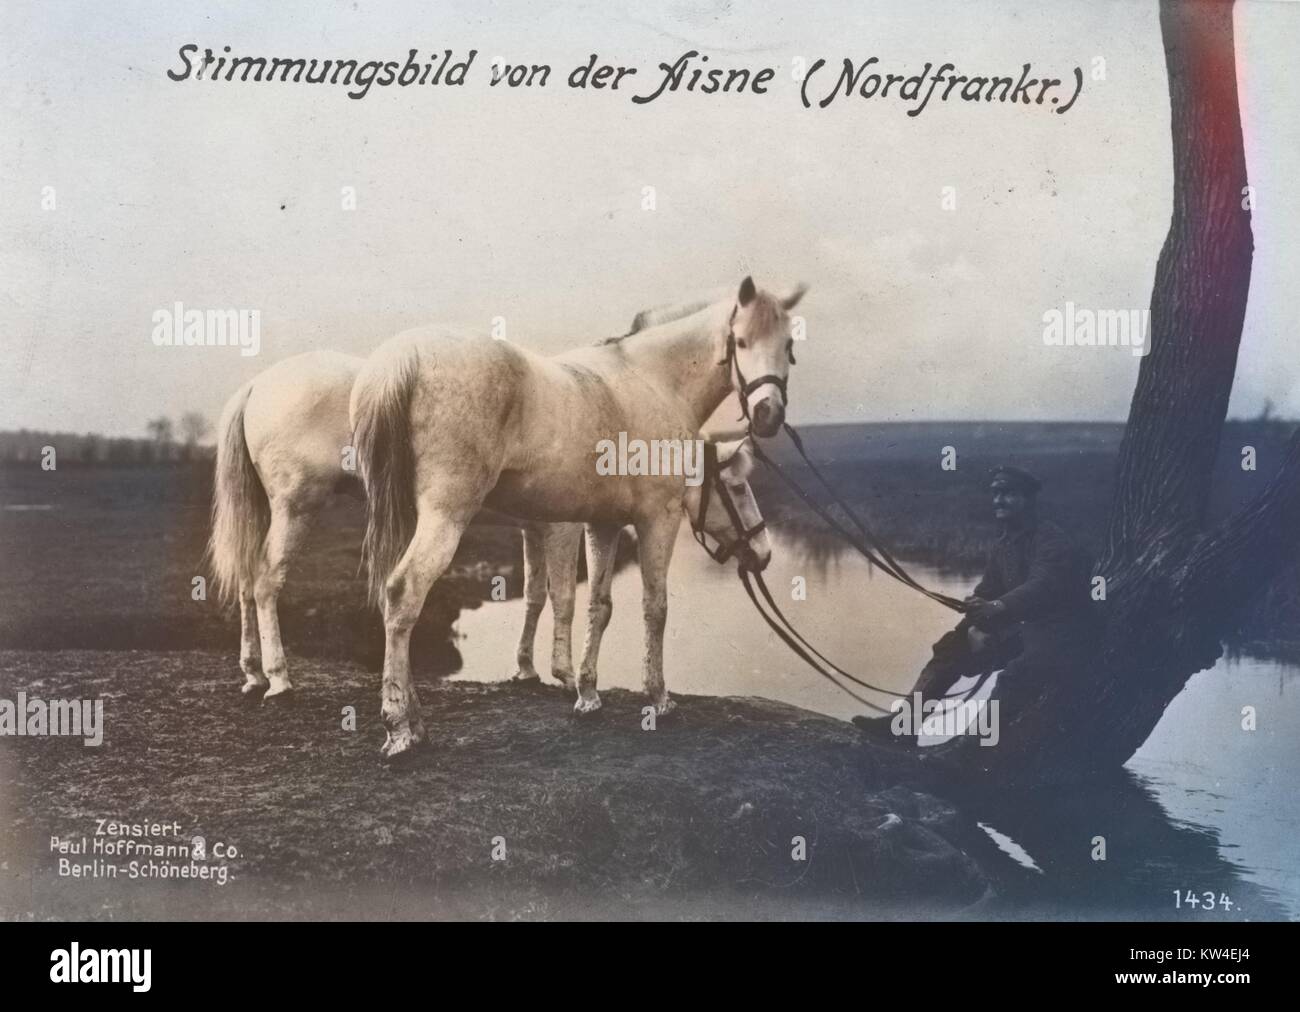 Soldato tedesco con due cavalli, con didascalia originale lettura Stimmungsbild von der Aisne (Nordfrankr.), 1900. Nota: l'immagine è stato colorizzato digitalmente usando un processo moderno. I colori possono non essere periodo-precisa. Foto Stock